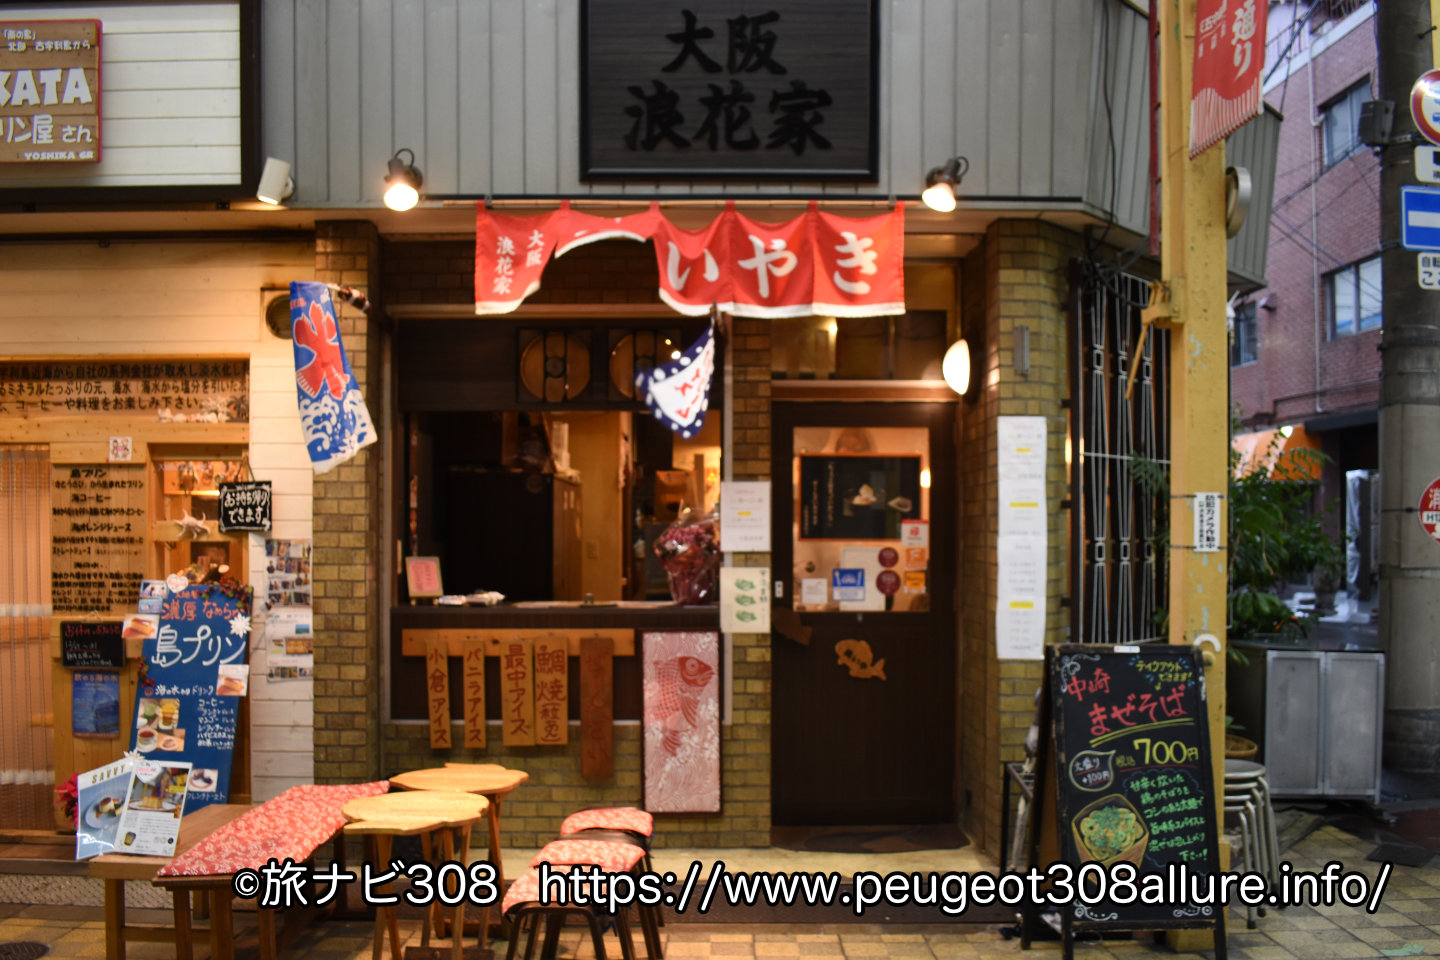 大阪へ車中泊旅行！中崎町にある浪花家。真の鯛焼きを味わえる!老舗麻布十番本店から暖簾分けした100年を越える伝統と技が作る本物の味。店内の雰囲気や実際に食べた感想などご紹介！